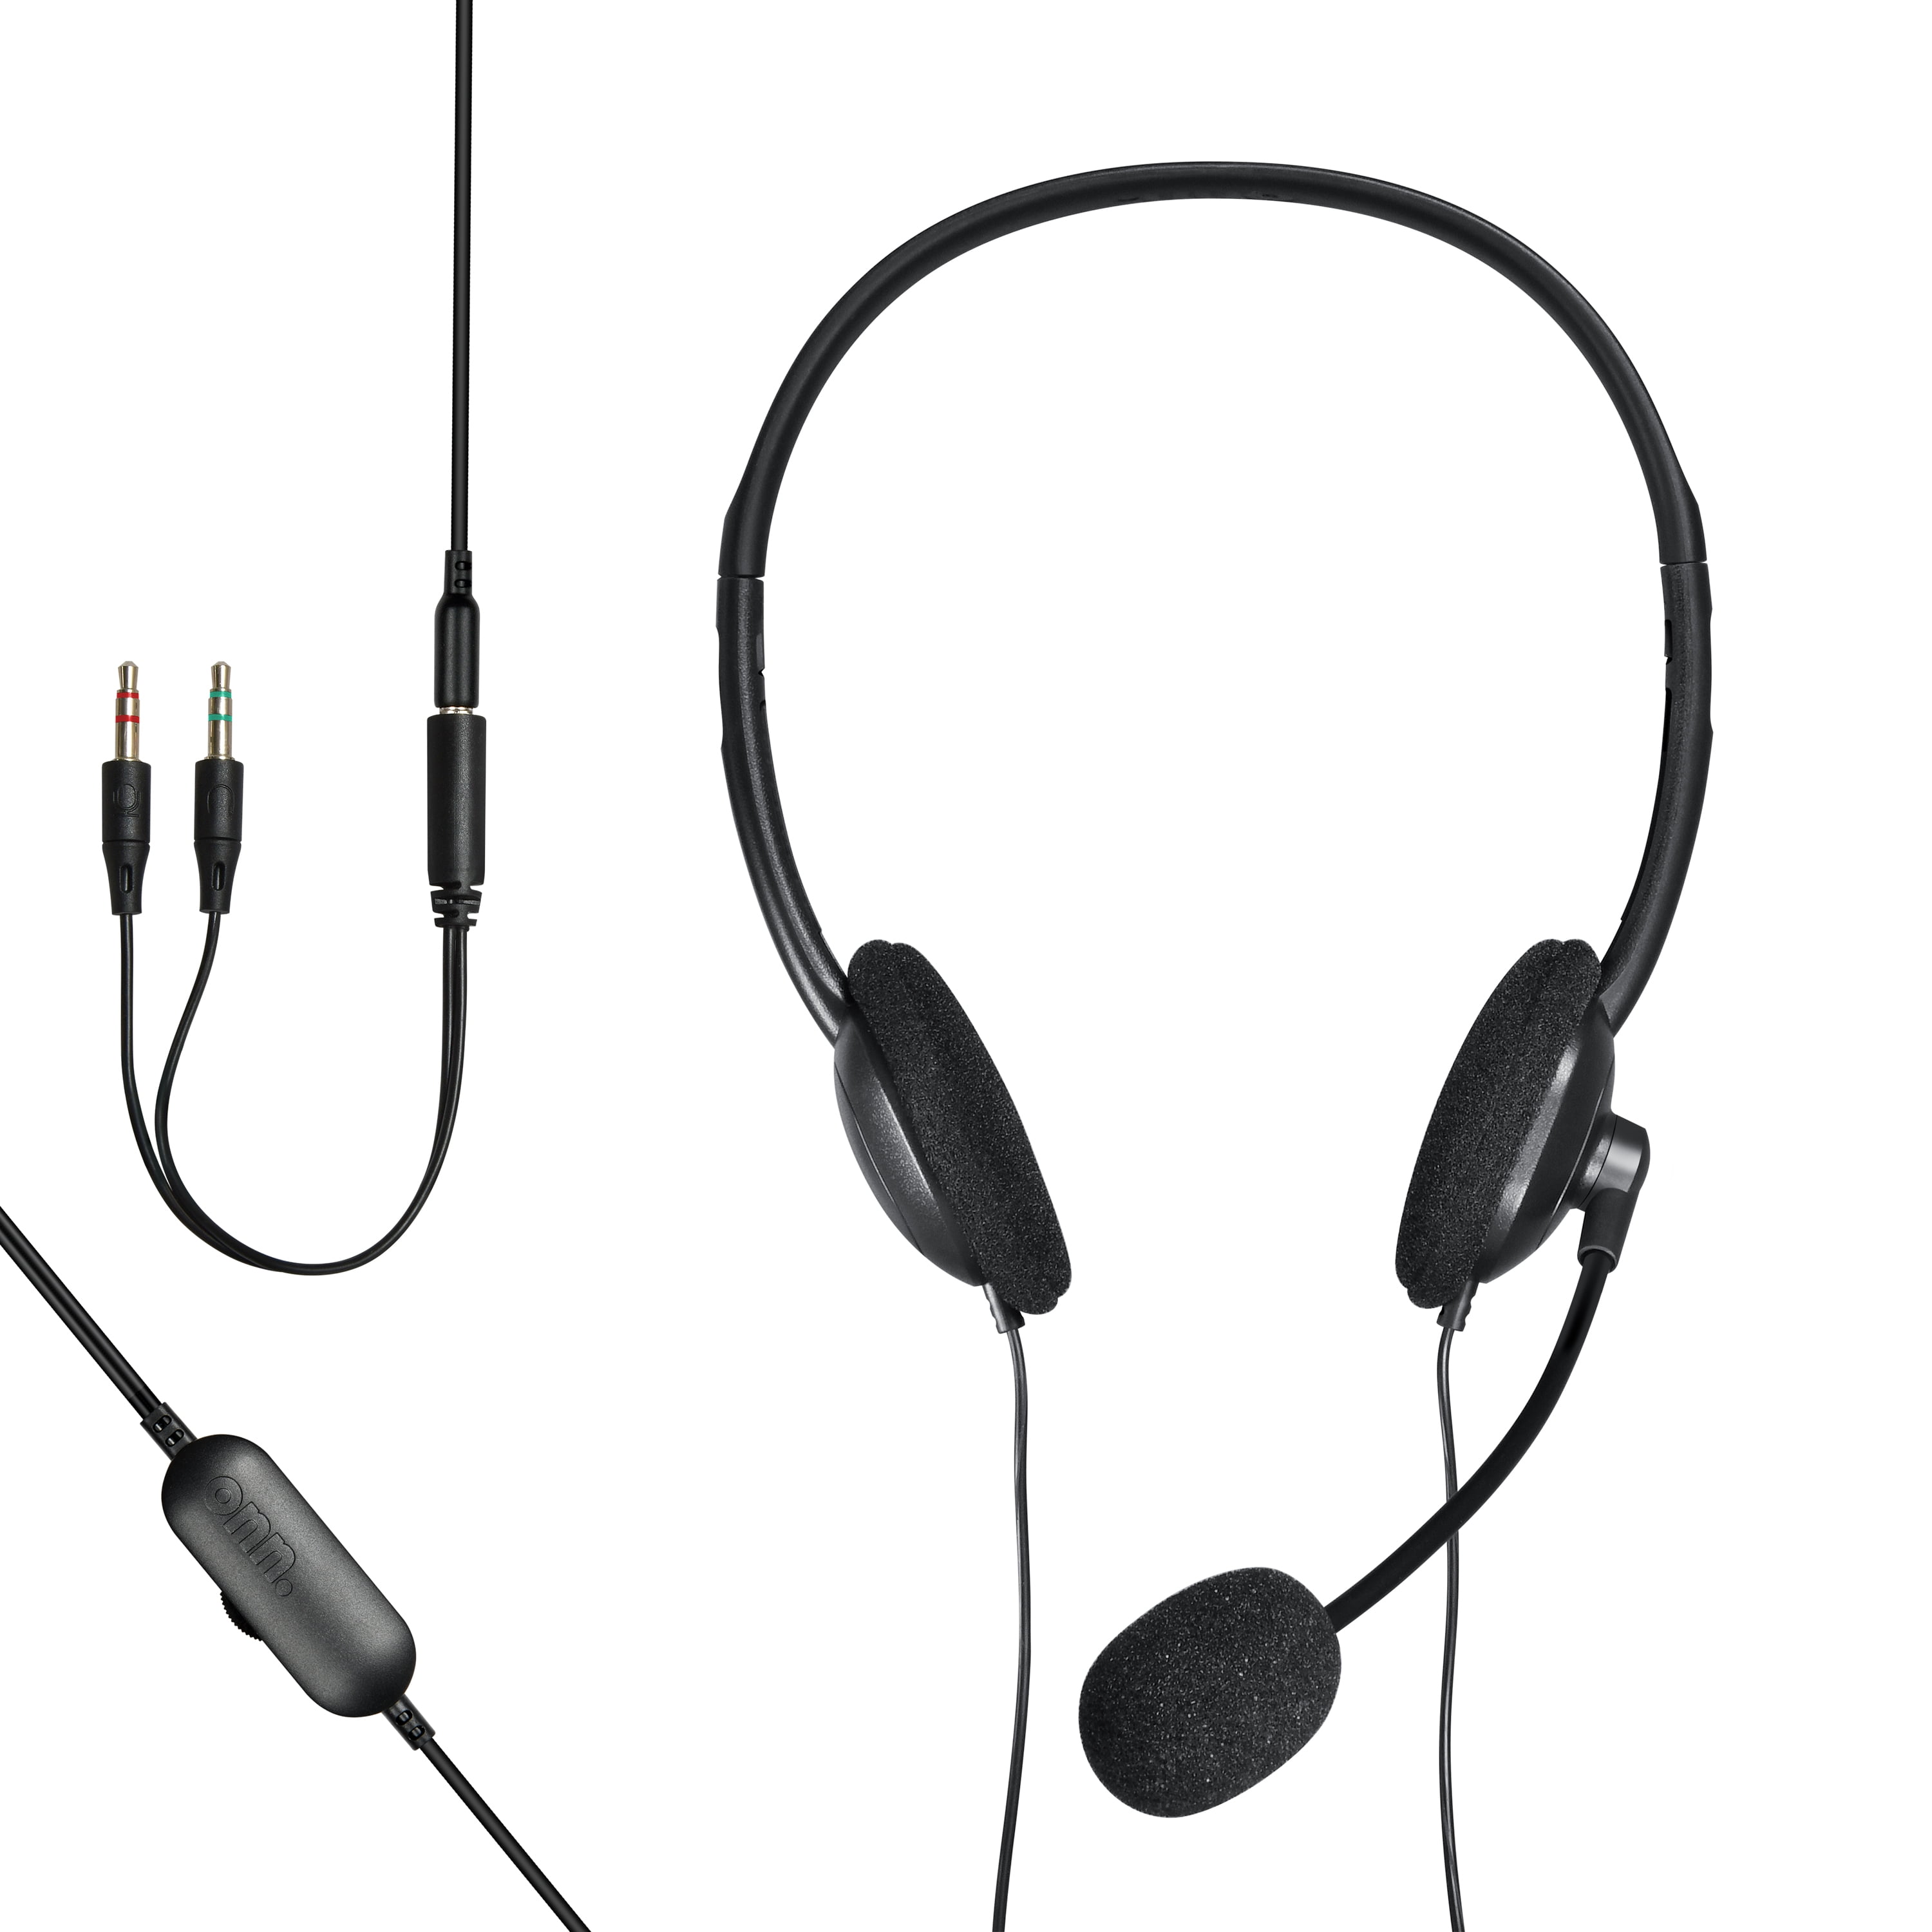 ONN ON EAR 3.5 mm Headphones Black Lightweight with Adjustable Headband New 